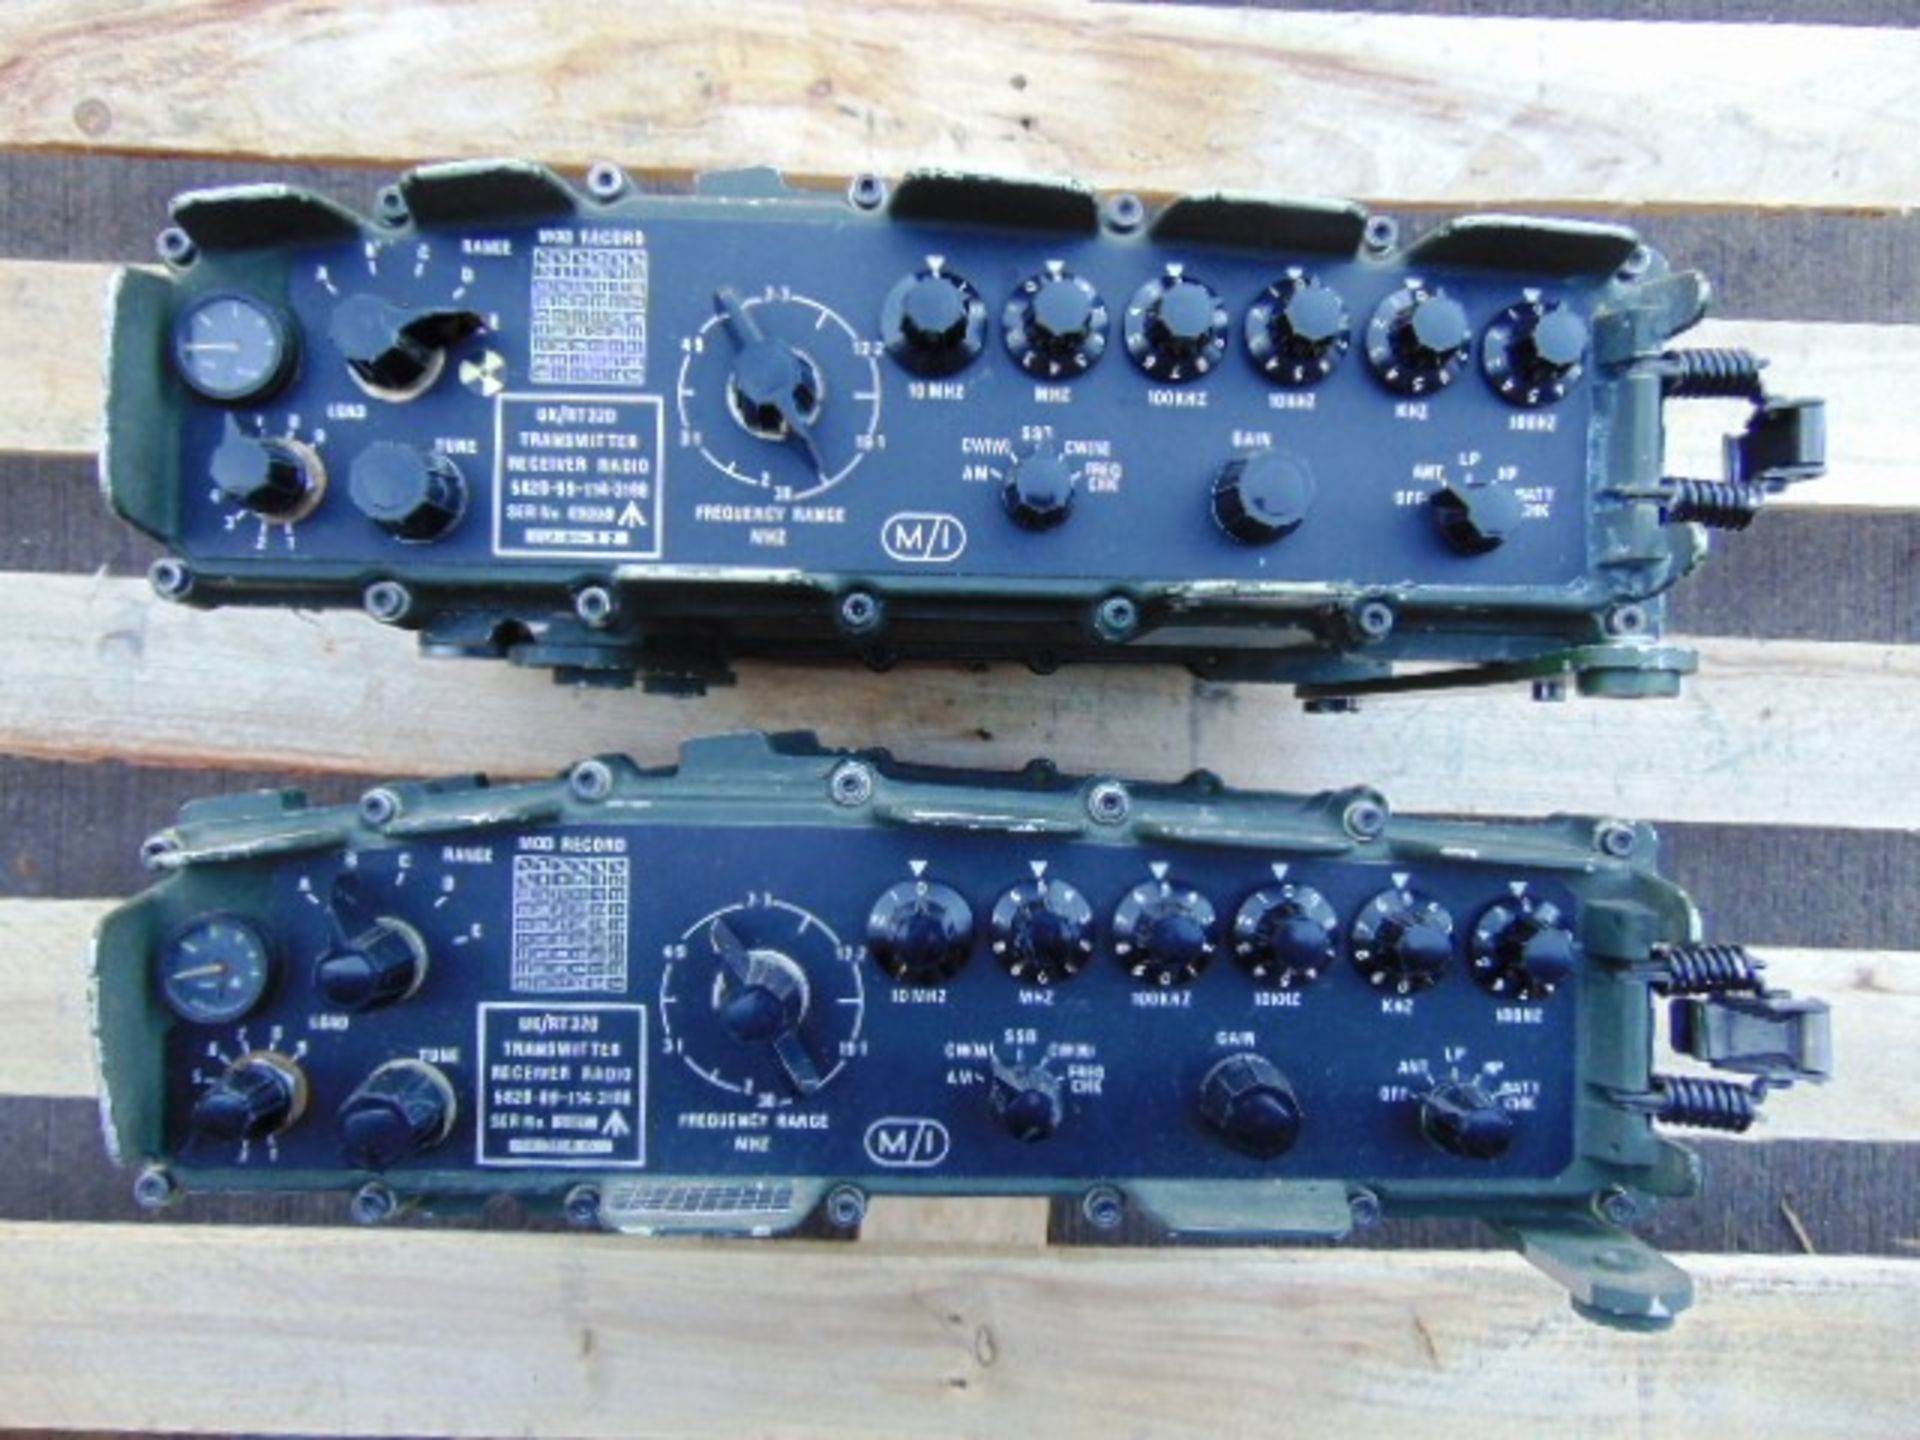 2 x RT320 Transmiter Receiver Radios